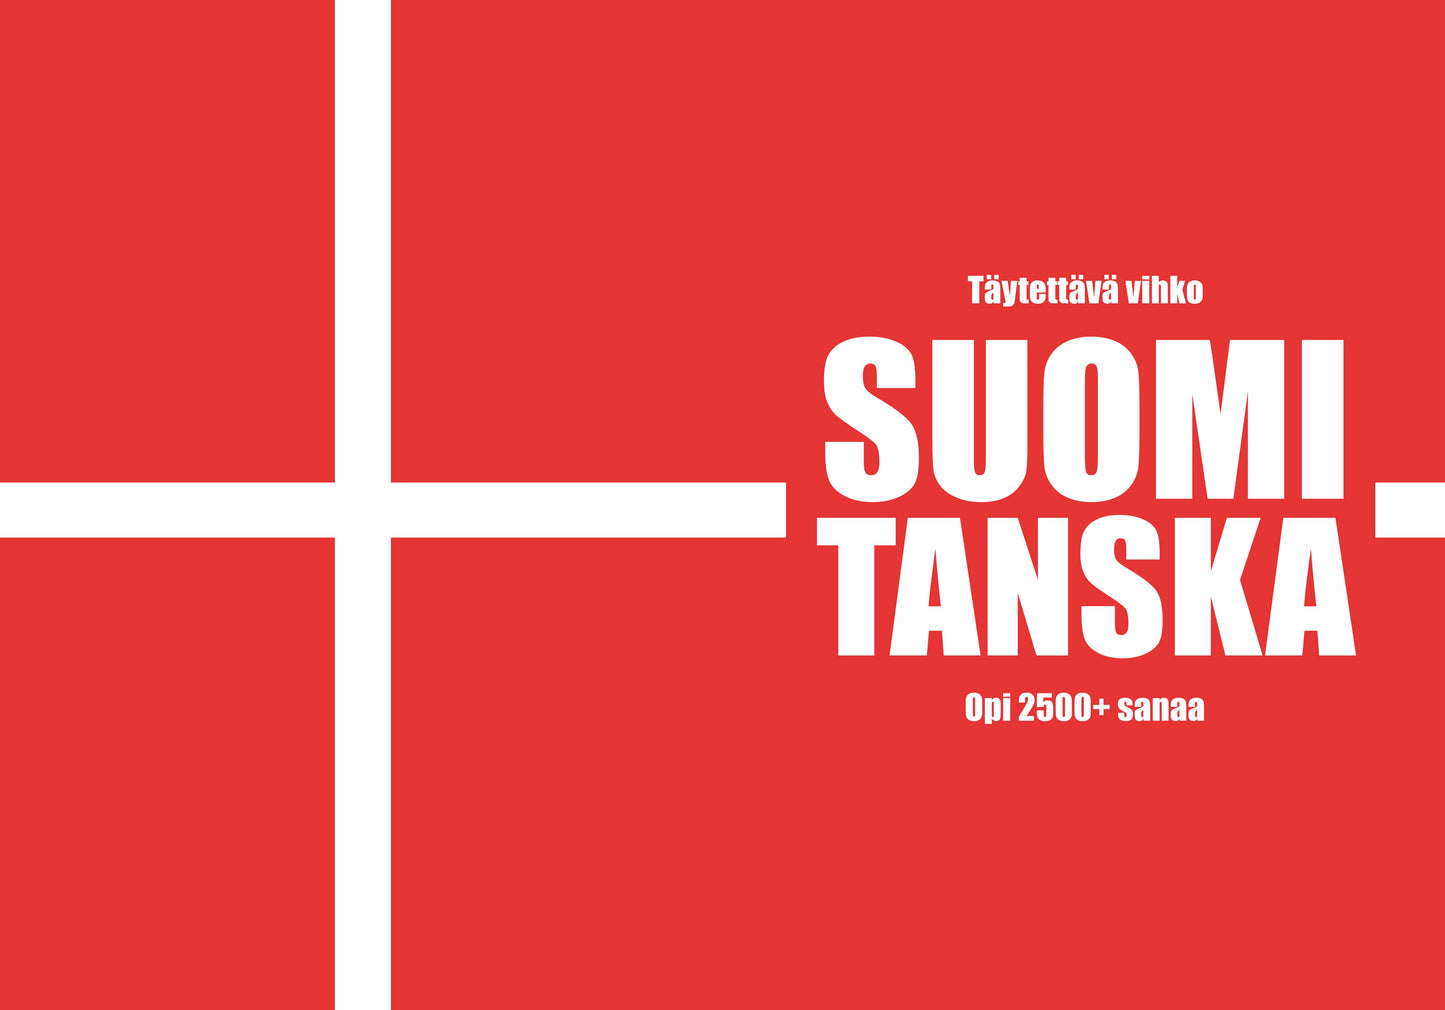 Suomi-tanska täytettävä vihko